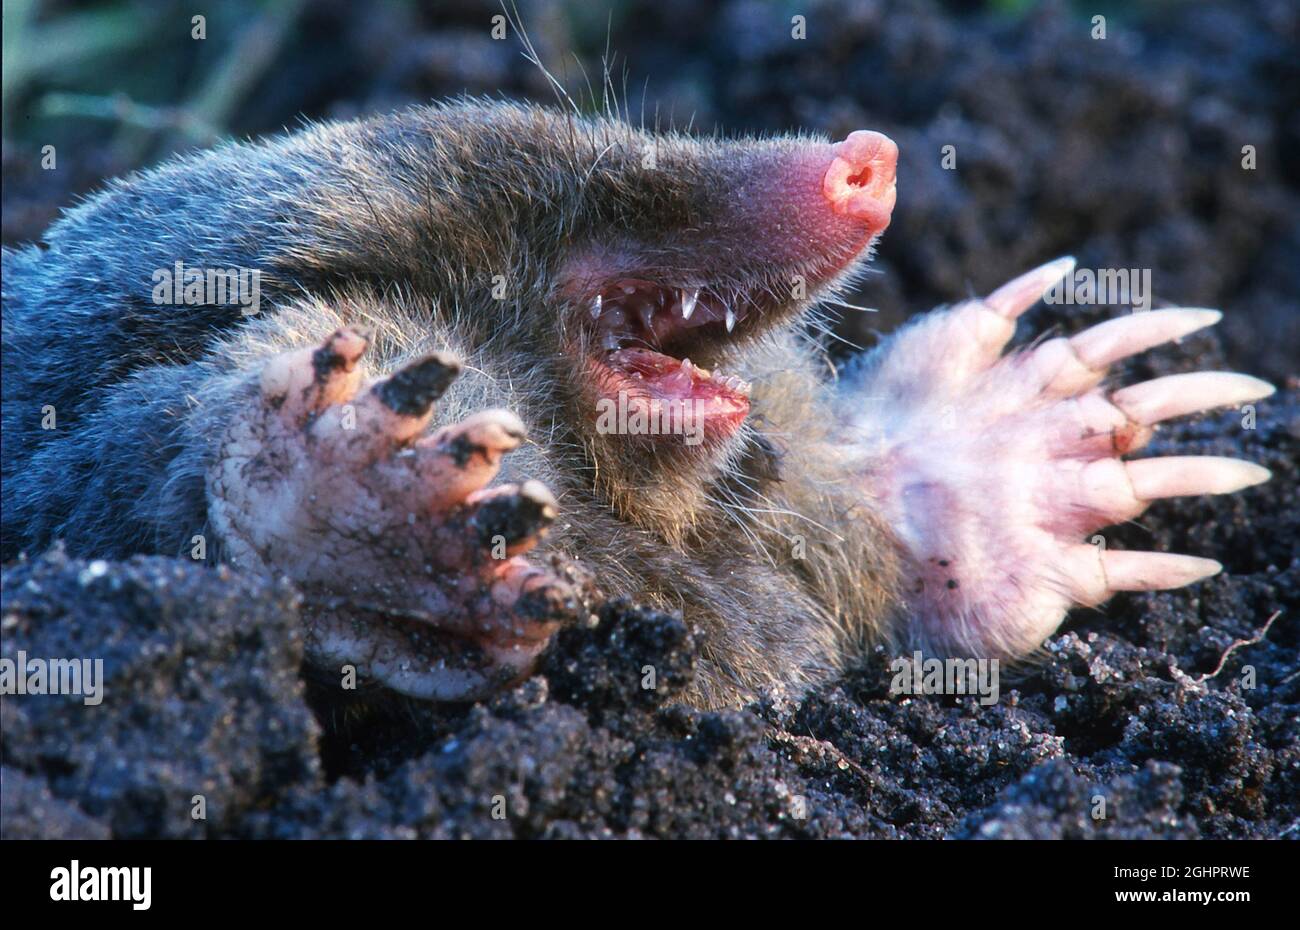 Mole mole européenne (Talpa europaea) creusant un tunnel, Rhénanie-du-Nord-Westphalie, Allemagne Banque D'Images